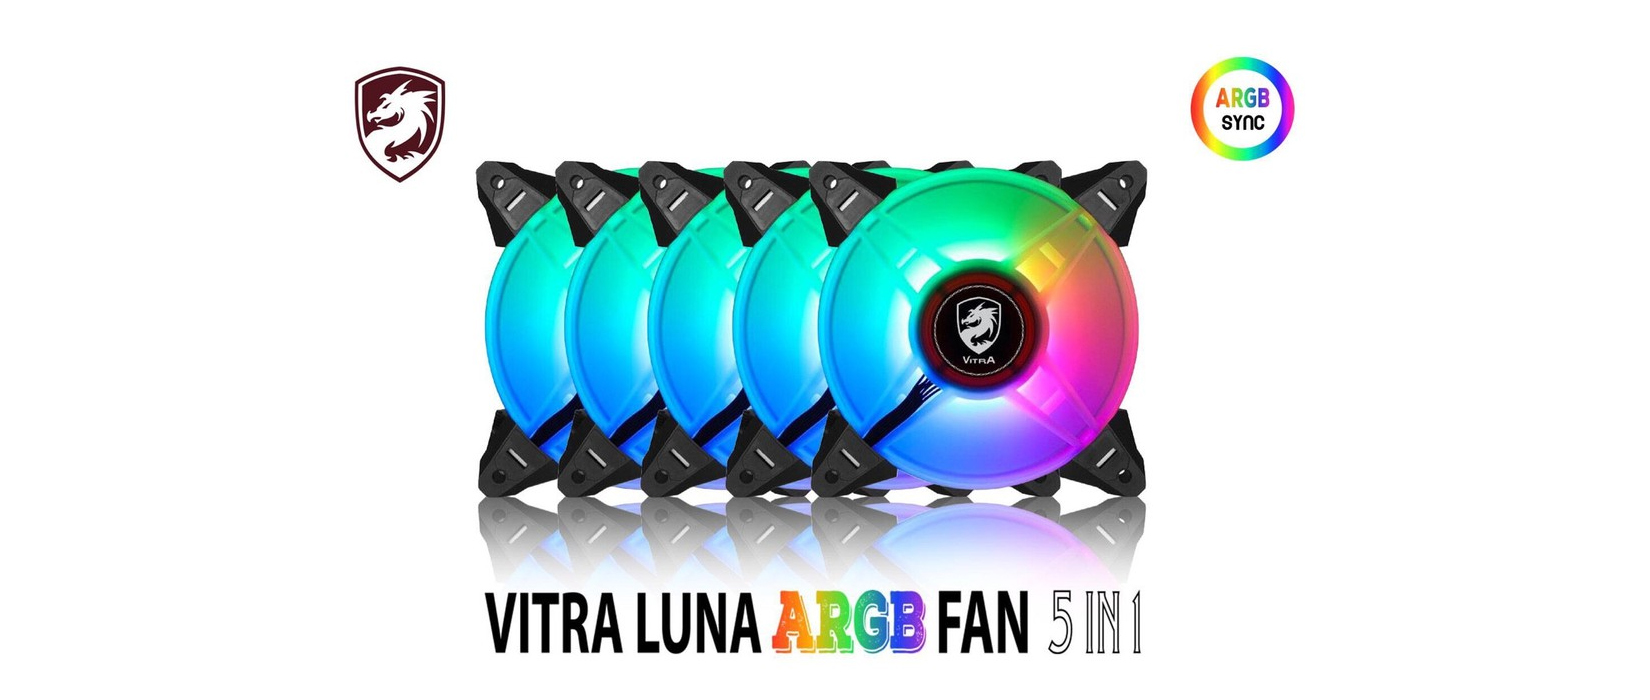 Giới thiệu Fan Case Vitra Luna A-RGB AURA SYNC 5 IN 1( MainBoard Sync / Kèm điều khiển) 